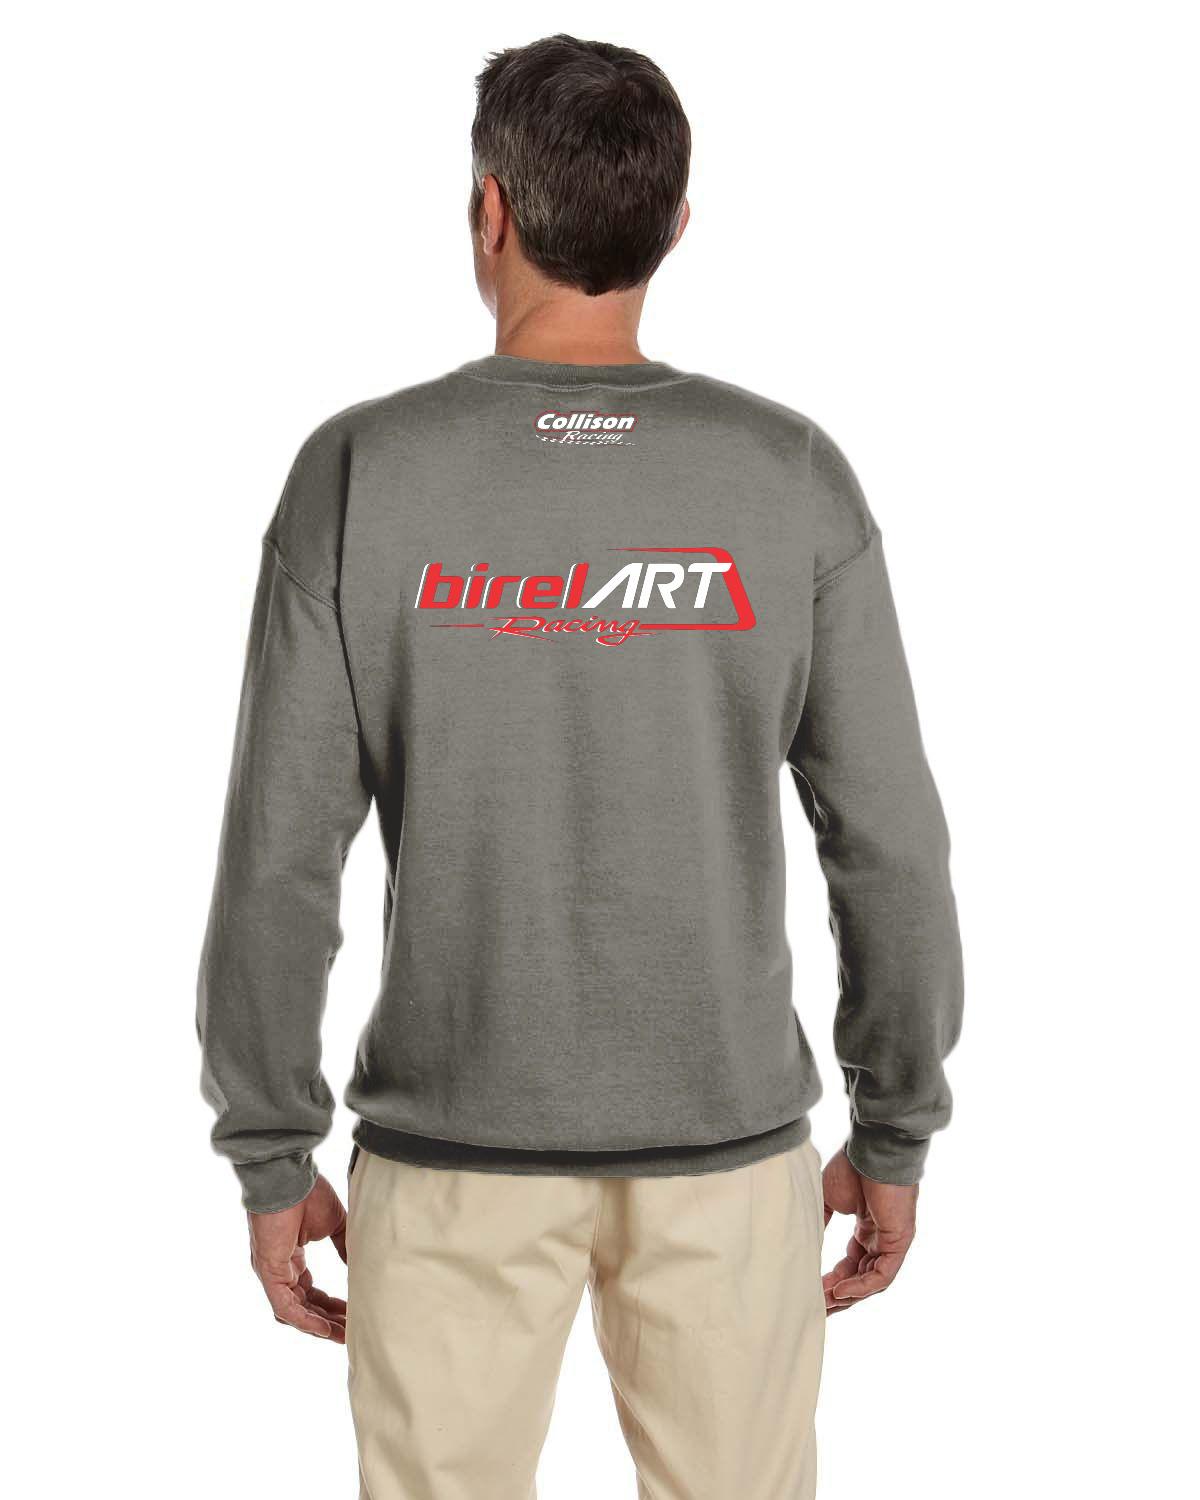 Birel Art Racing Adult crew neck sweater